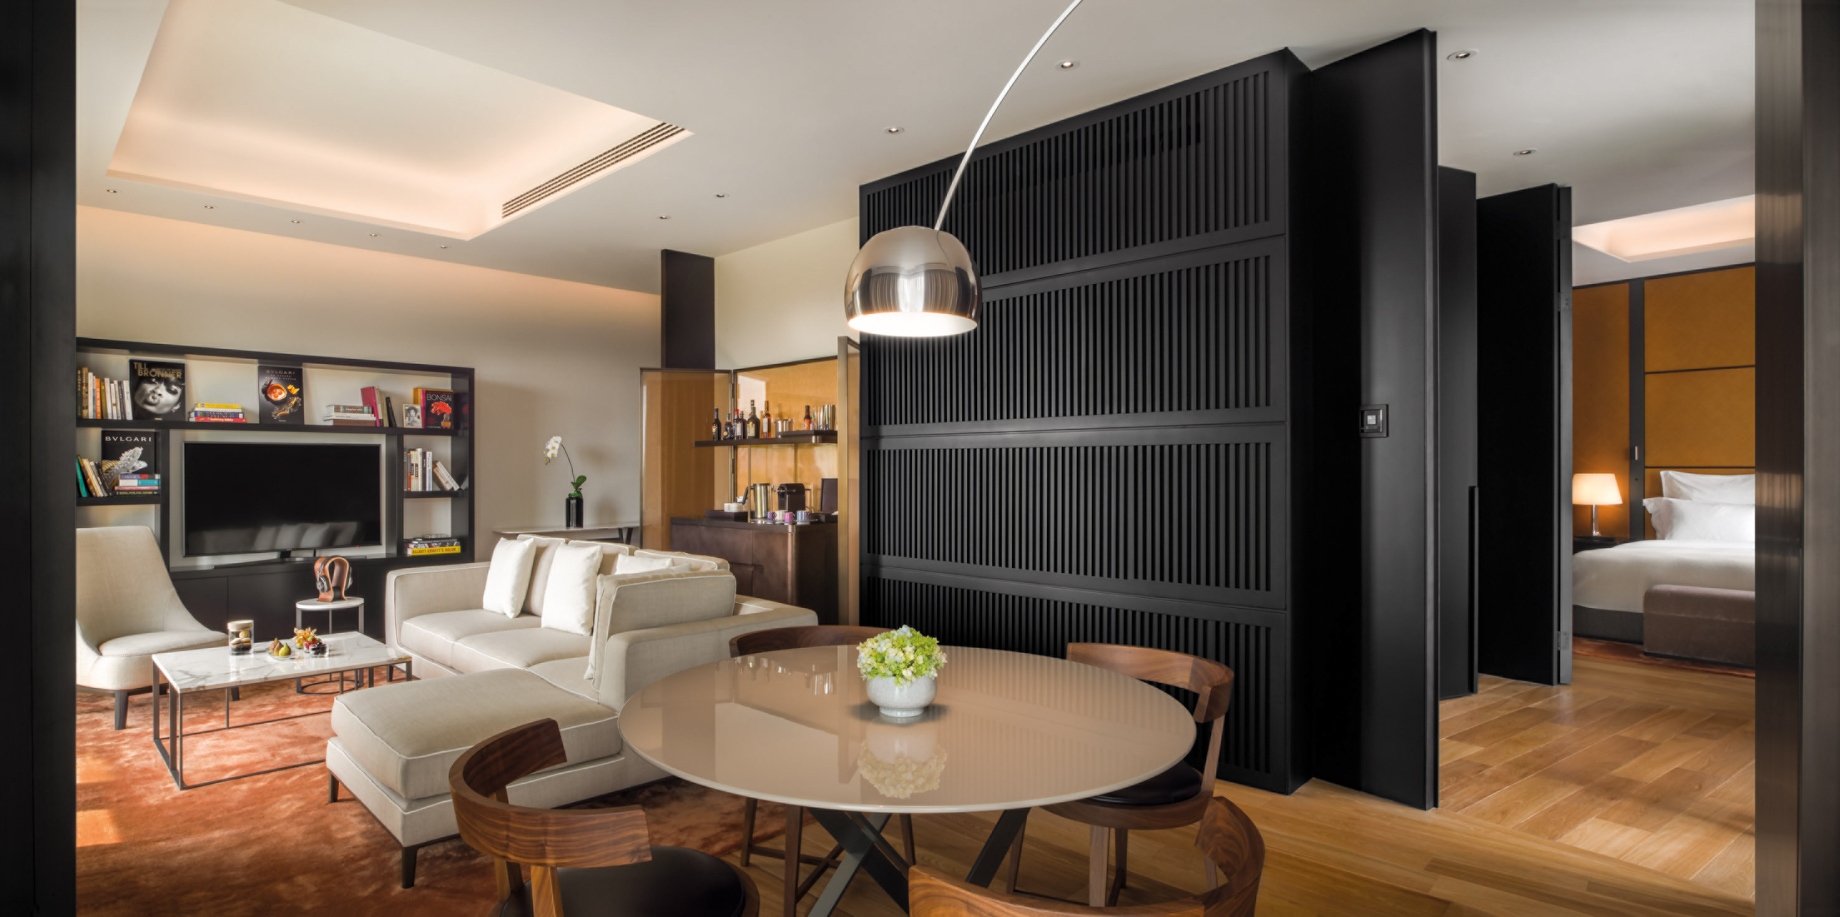 Bvlgari Hotel Beijing – Beijing, China – Guest Suite Living Room and Bedroom